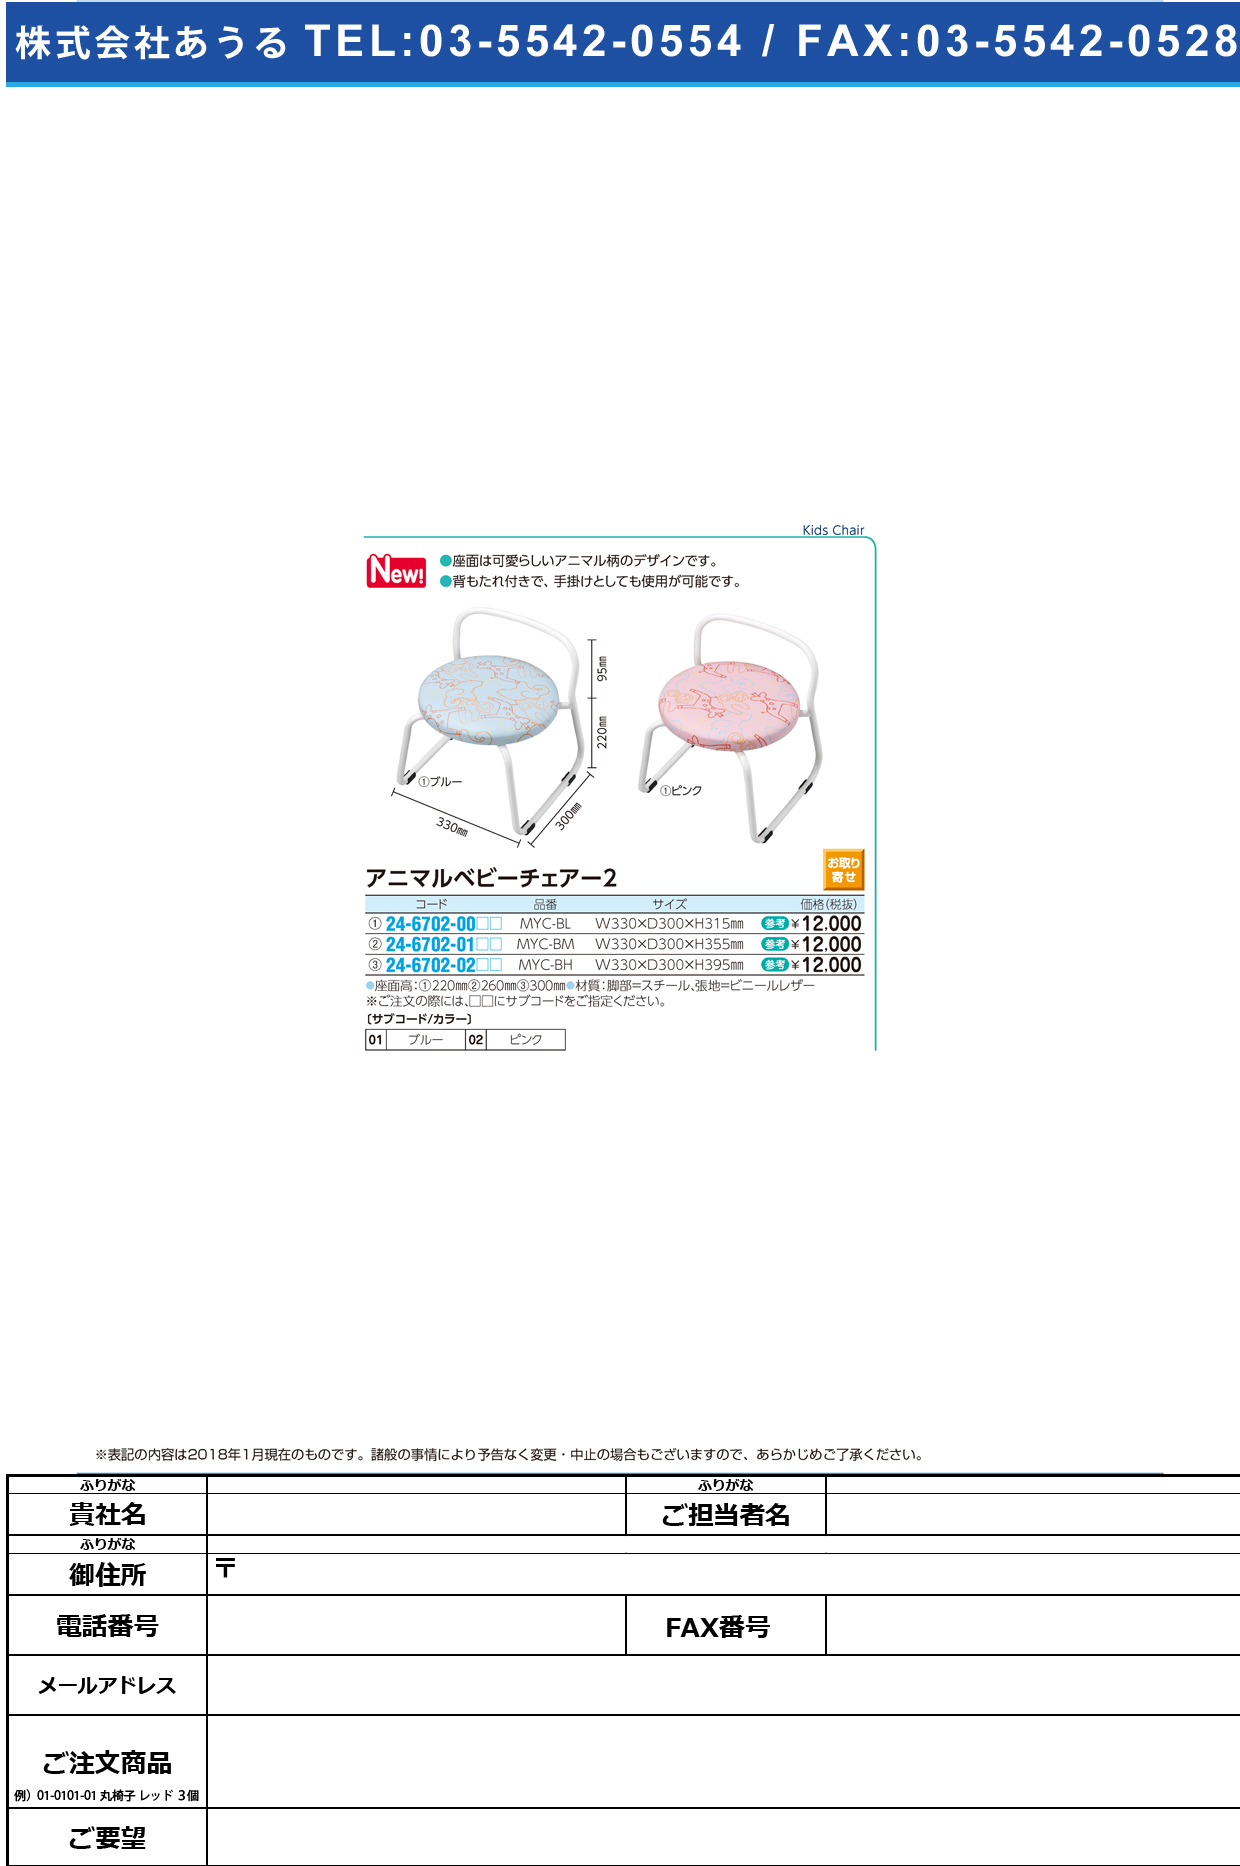 アニマルベビーチェア MYC-BH(33X30X39.5CM) ｱﾆﾏﾙﾍﾞﾋﾞｰﾁｪｱ2 ブルー